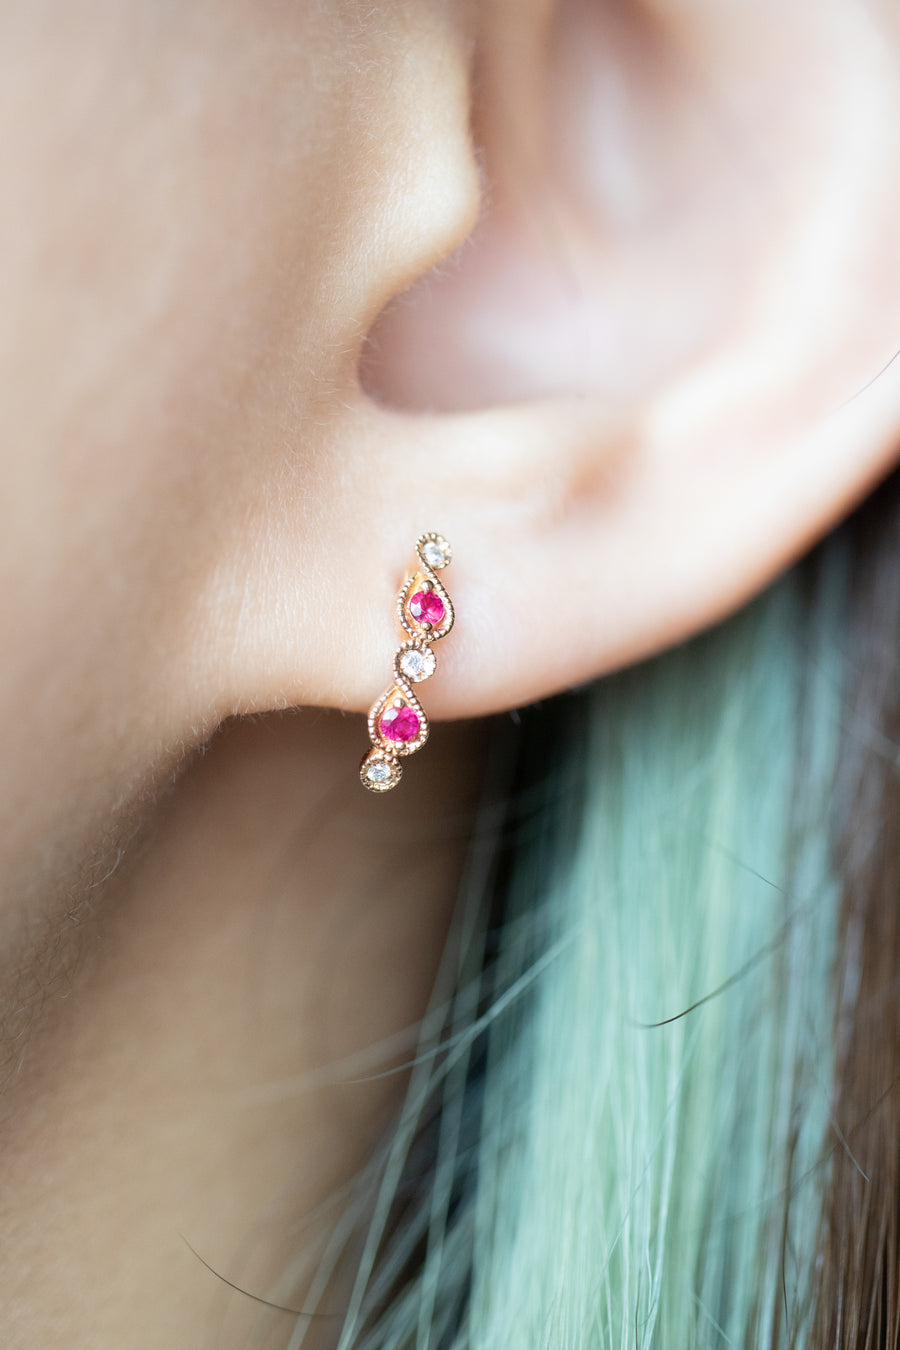 Total 0.08carat Ruby & 0.03carat Natural Diamonds 18K Rose Gold Earrings